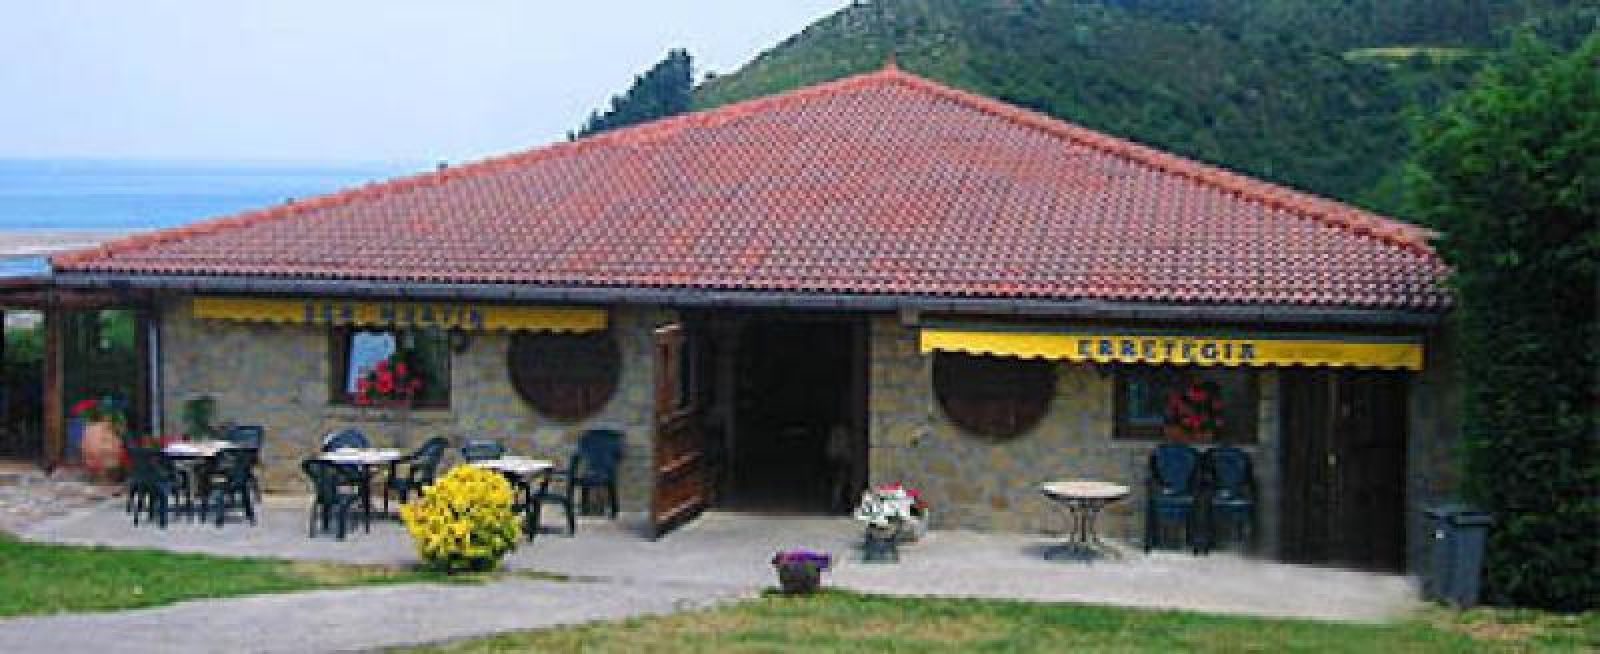 Sidrería San Martín Sagardotegia - Gipuzkoa